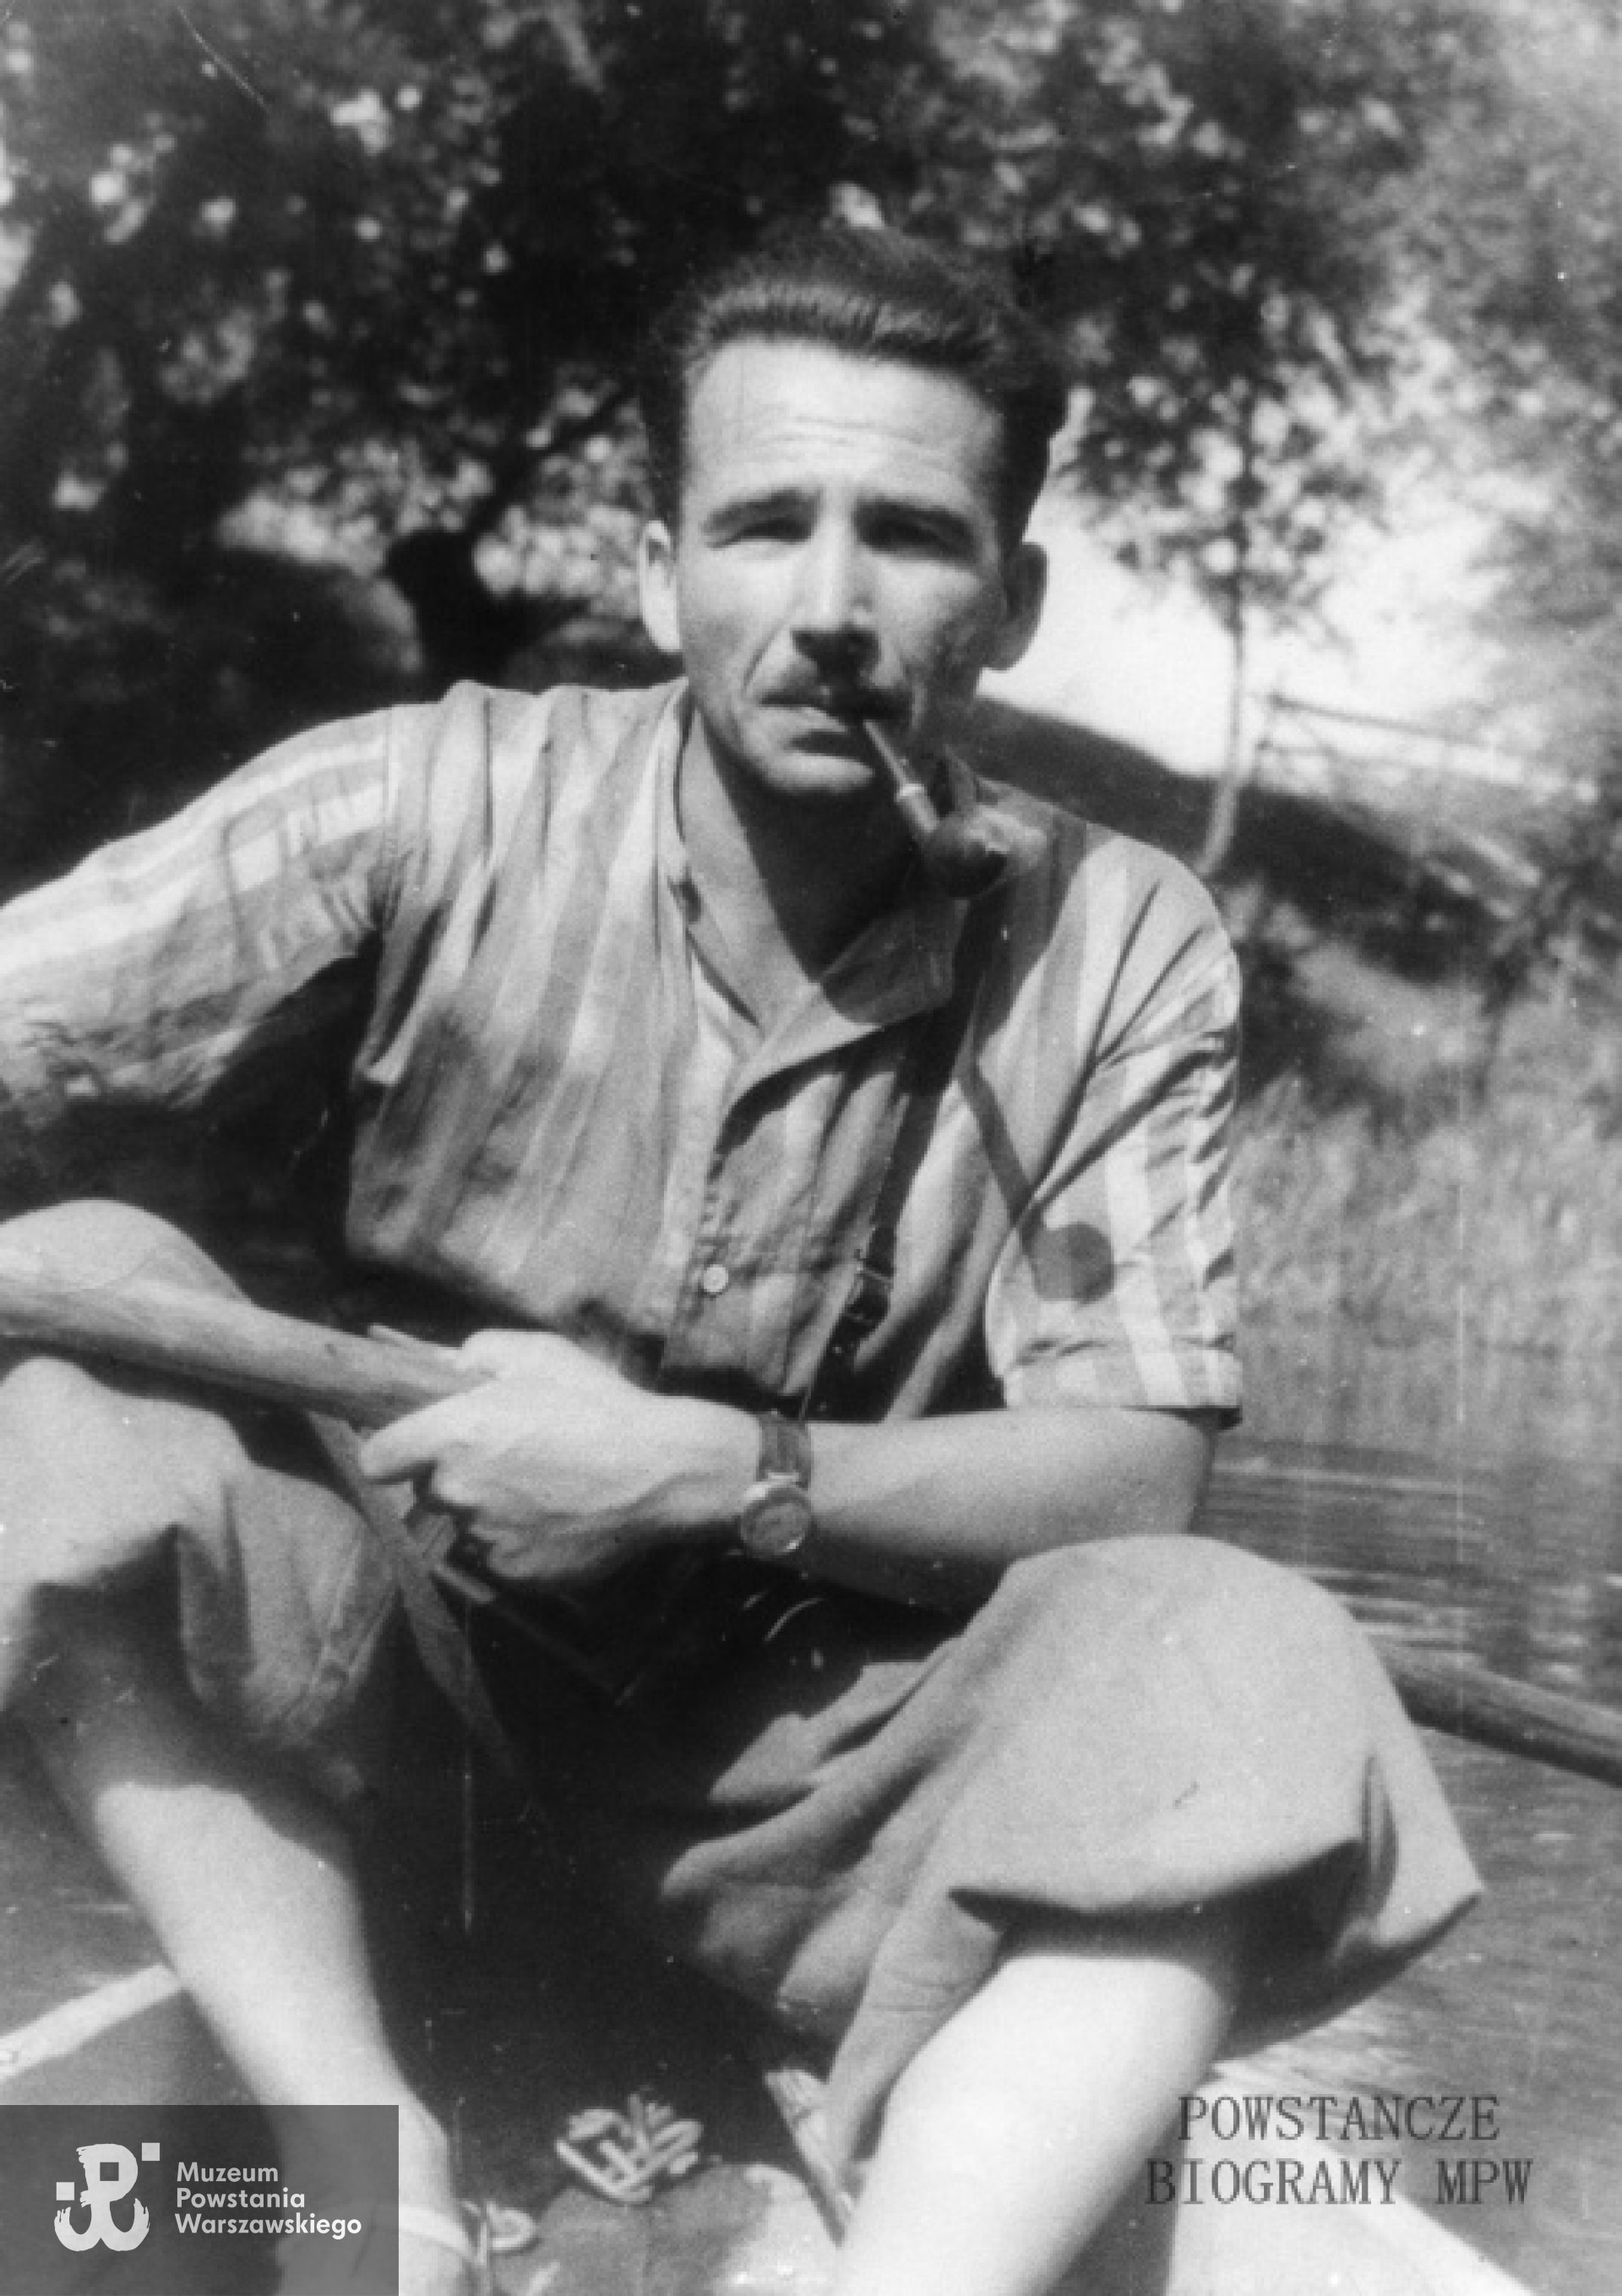 Czesław Korwin-Piotrowski "Karol" (1909-1944) Fot. AR MPW